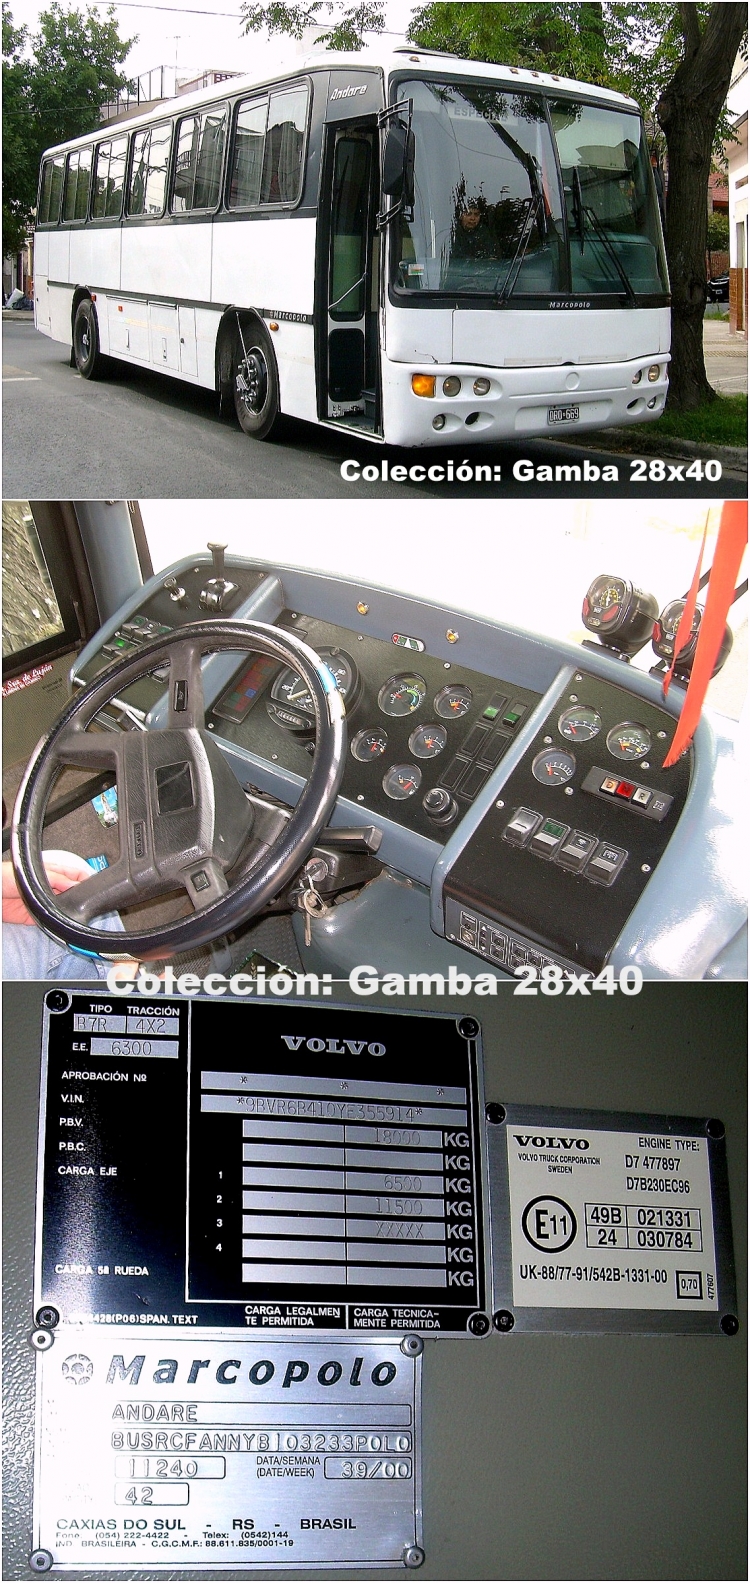 Volvo B 7 R - Marcopolo Andare - Particular
DRO 669
Ex Manuel Tienda León
Palabras clave: Gamba / Andare